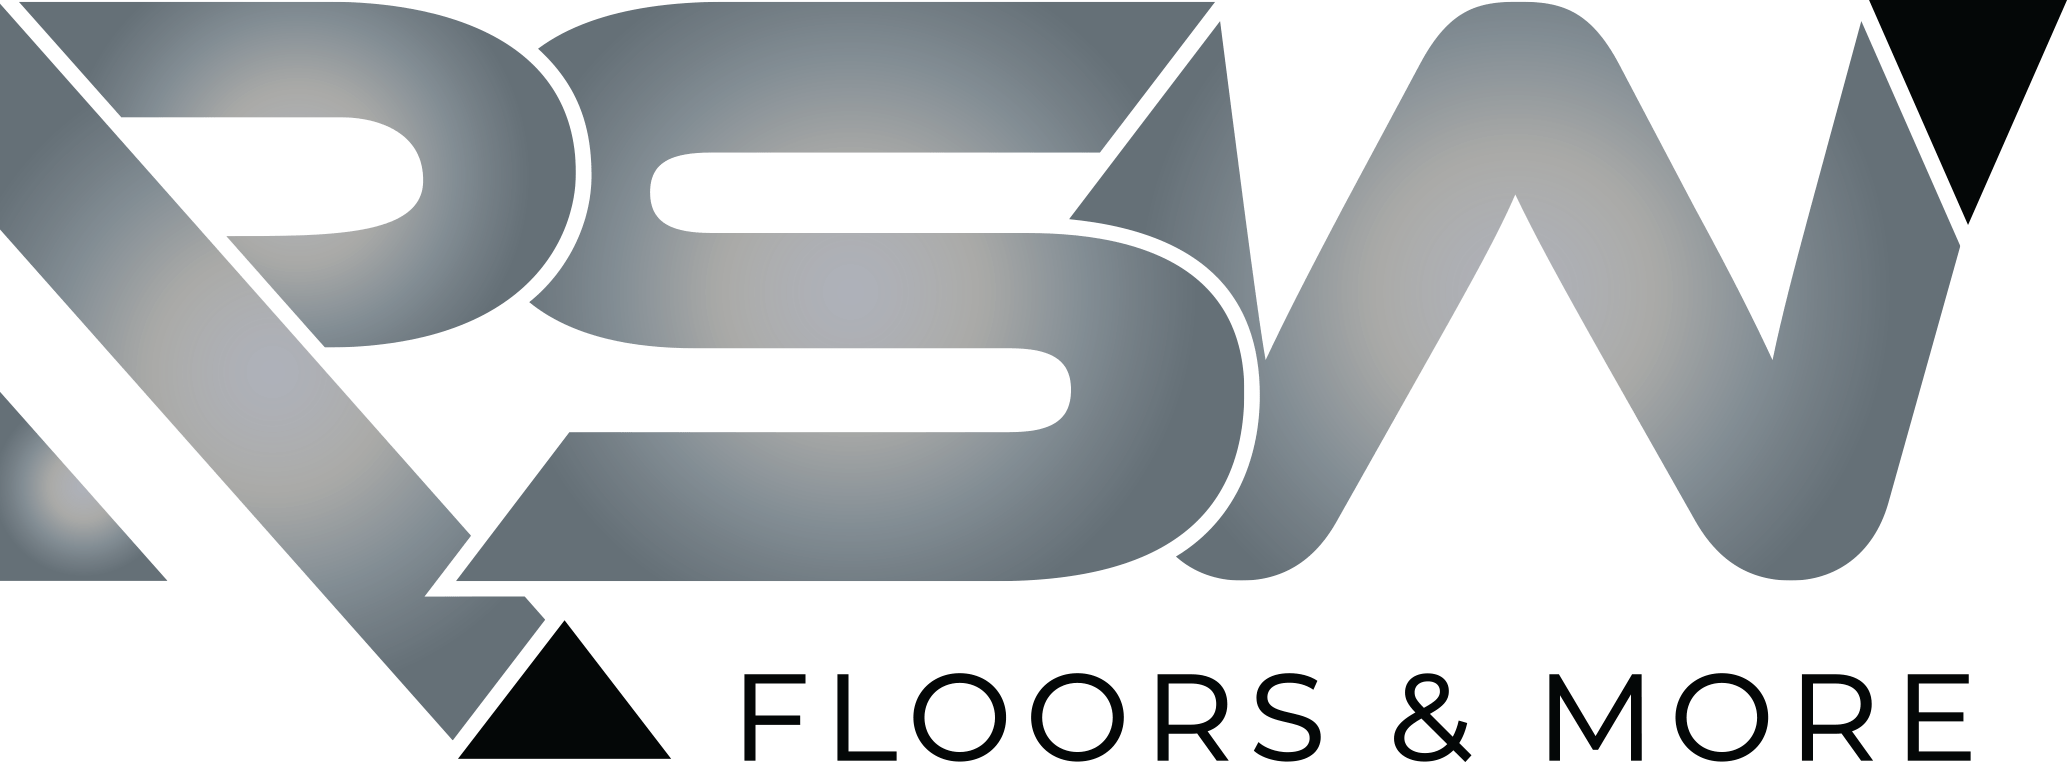 RSW Floors & More Logo Full Color